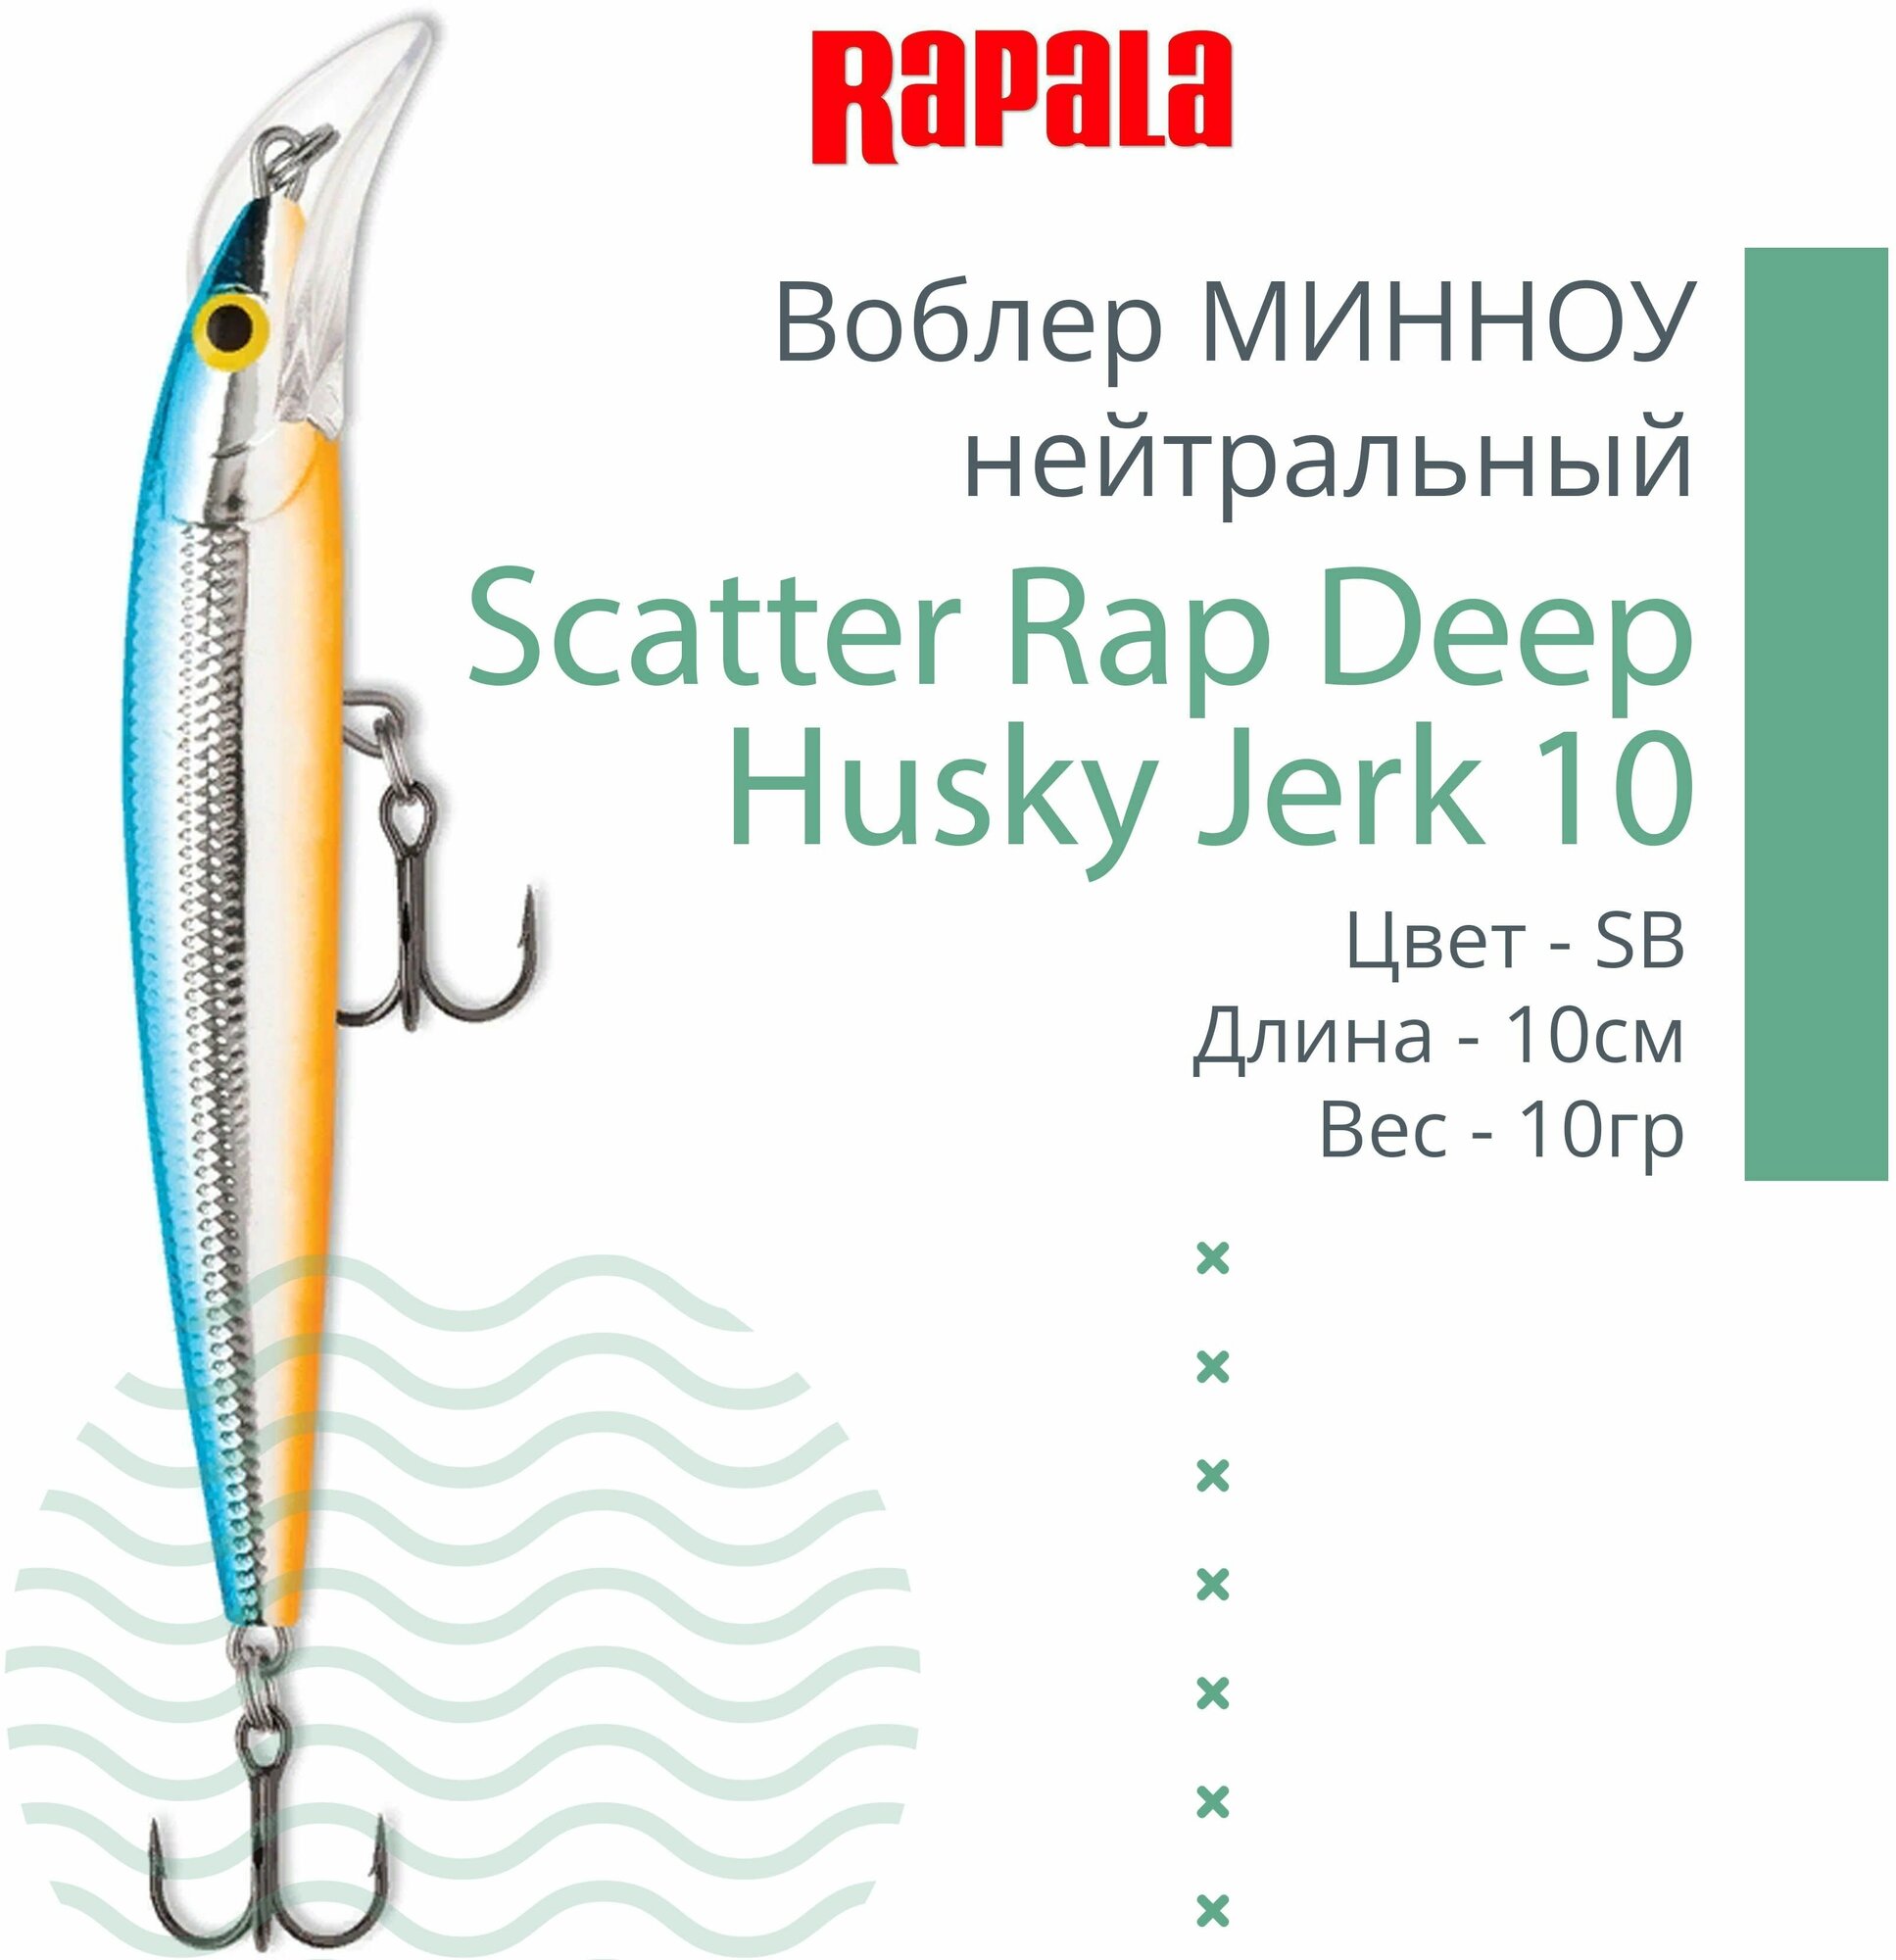 Воблер для рыбалки RAPALA Scatter Rap Deep Husky Jerk 10, 10см, 10гр, цвет SB, нейтральный